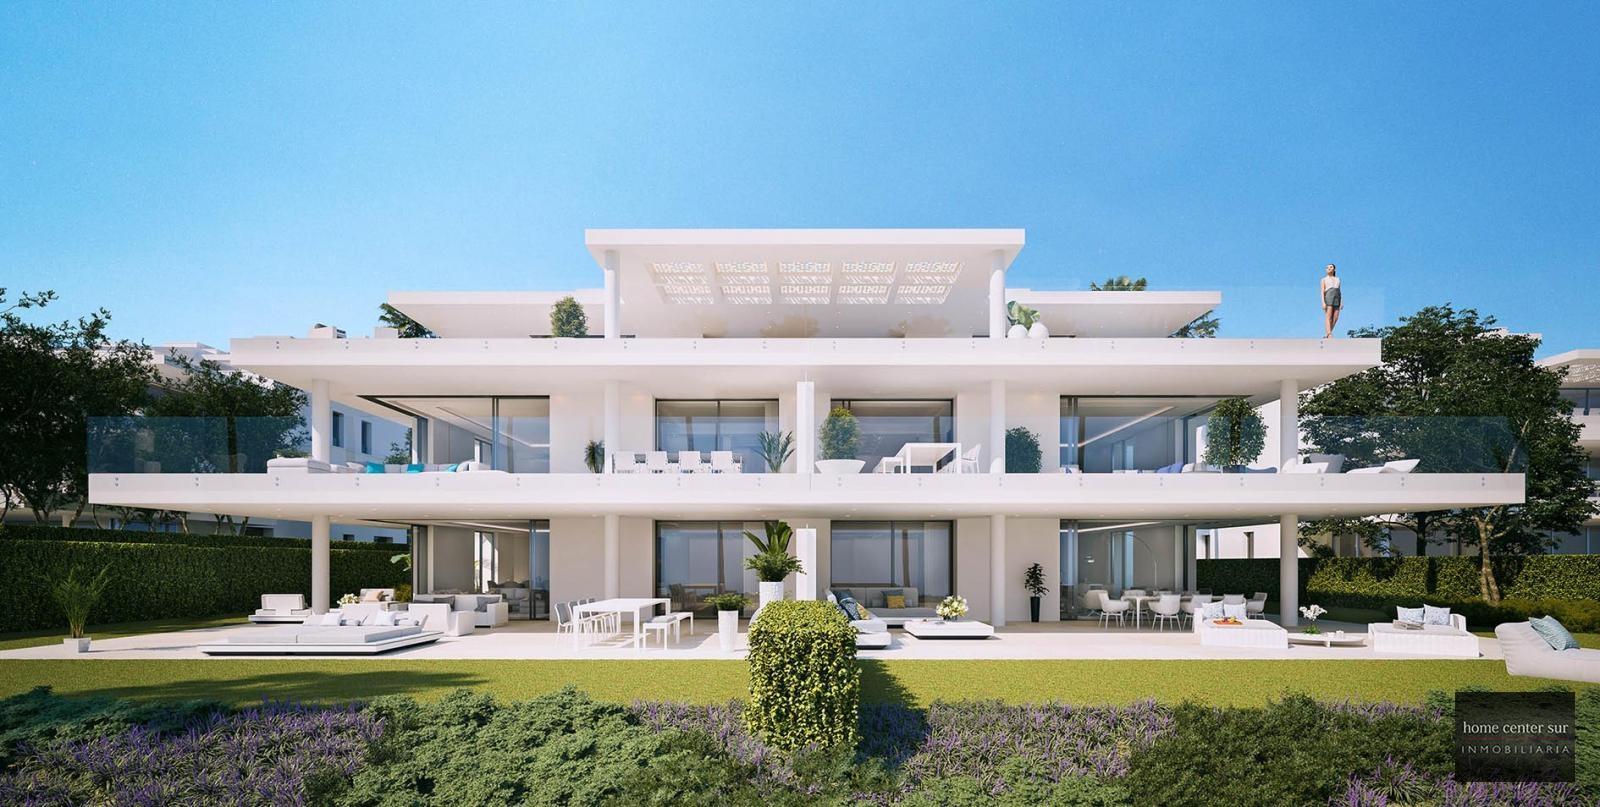 Apartamento de Lujo en venta en Autovía del Mediterráneo 7B (Estepona), 3.100.000 €